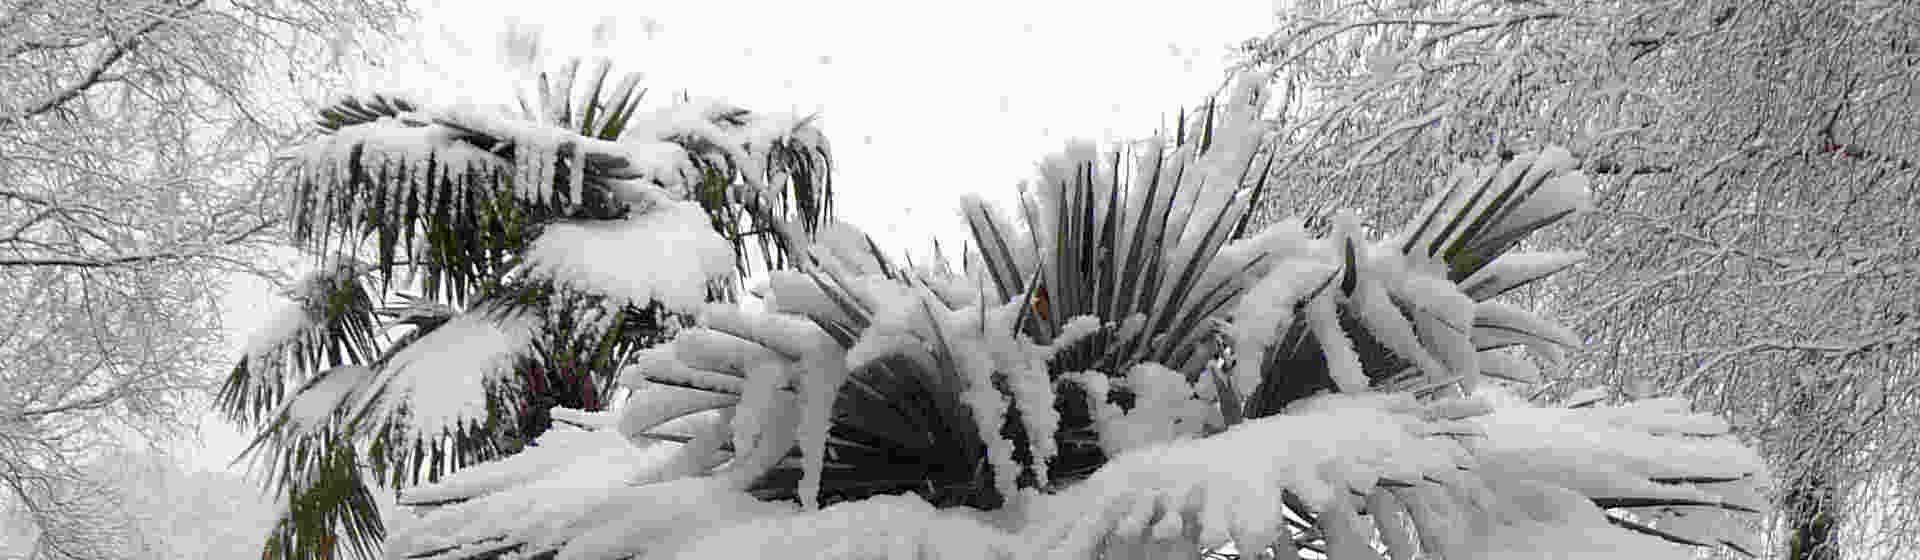 Palme im Schnee